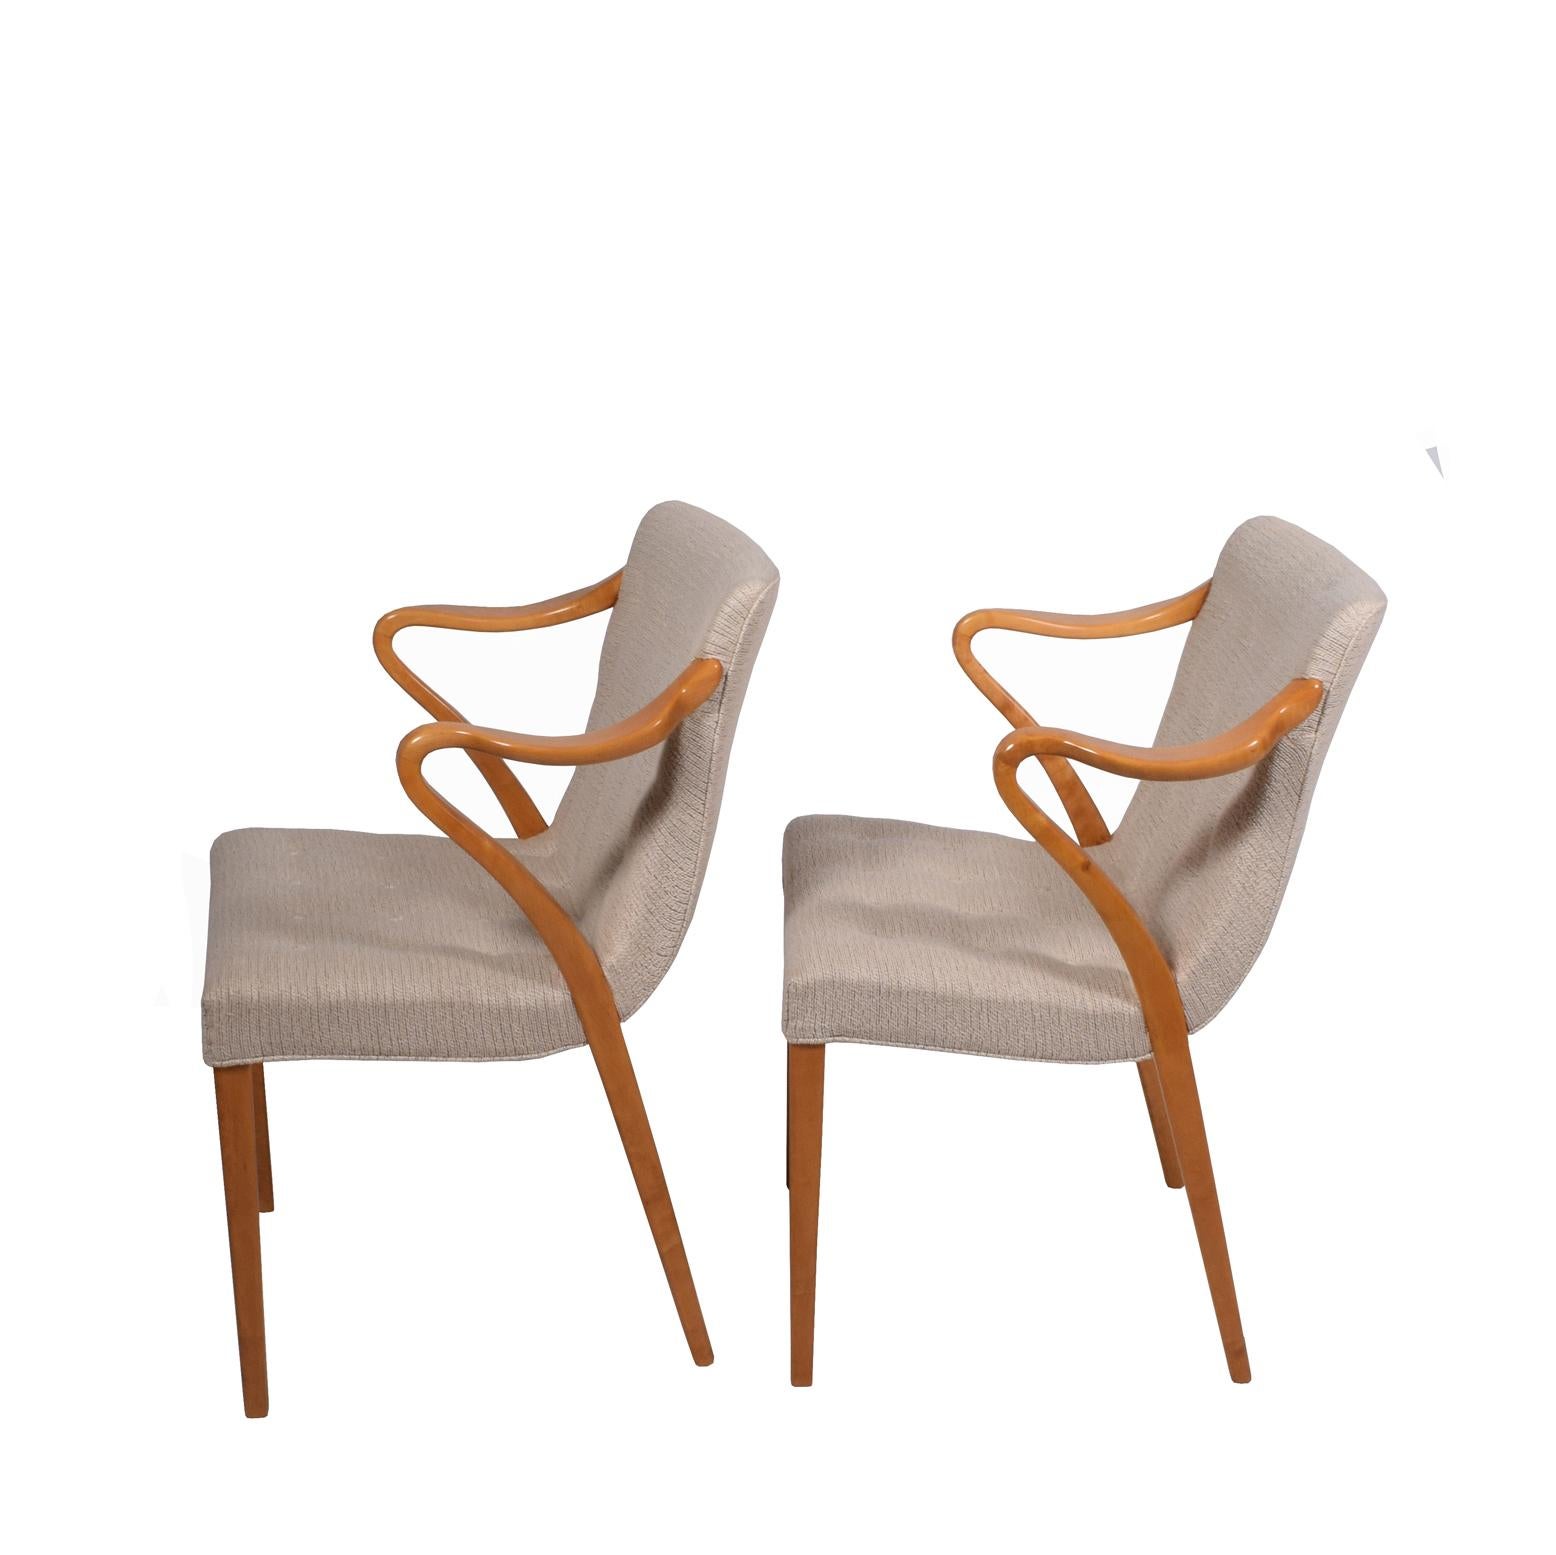 En 1936, Axel Larsson a conçu un groupe de meubles qui était son plus connu, les fauteuils en bois de bouleau massif et rembourrés
Mesures : Hauteur des bras 28